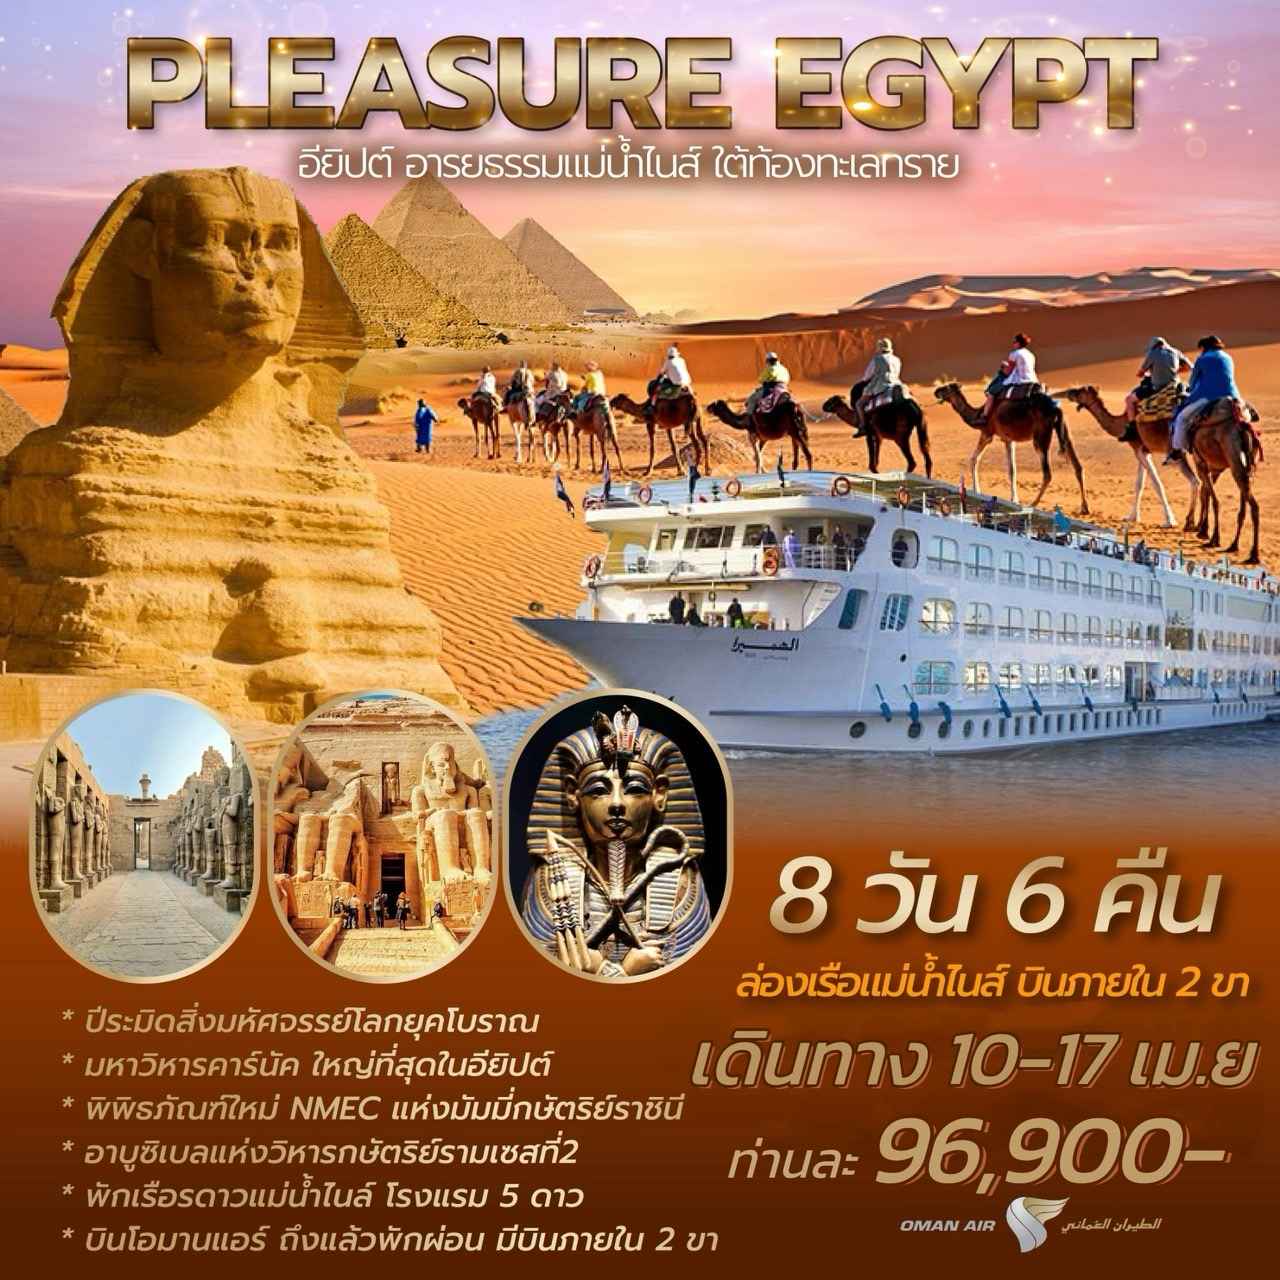 ทัวร์อียิปต์ AEG212-01 PLEASURE EGYPT CRUISE (030367)